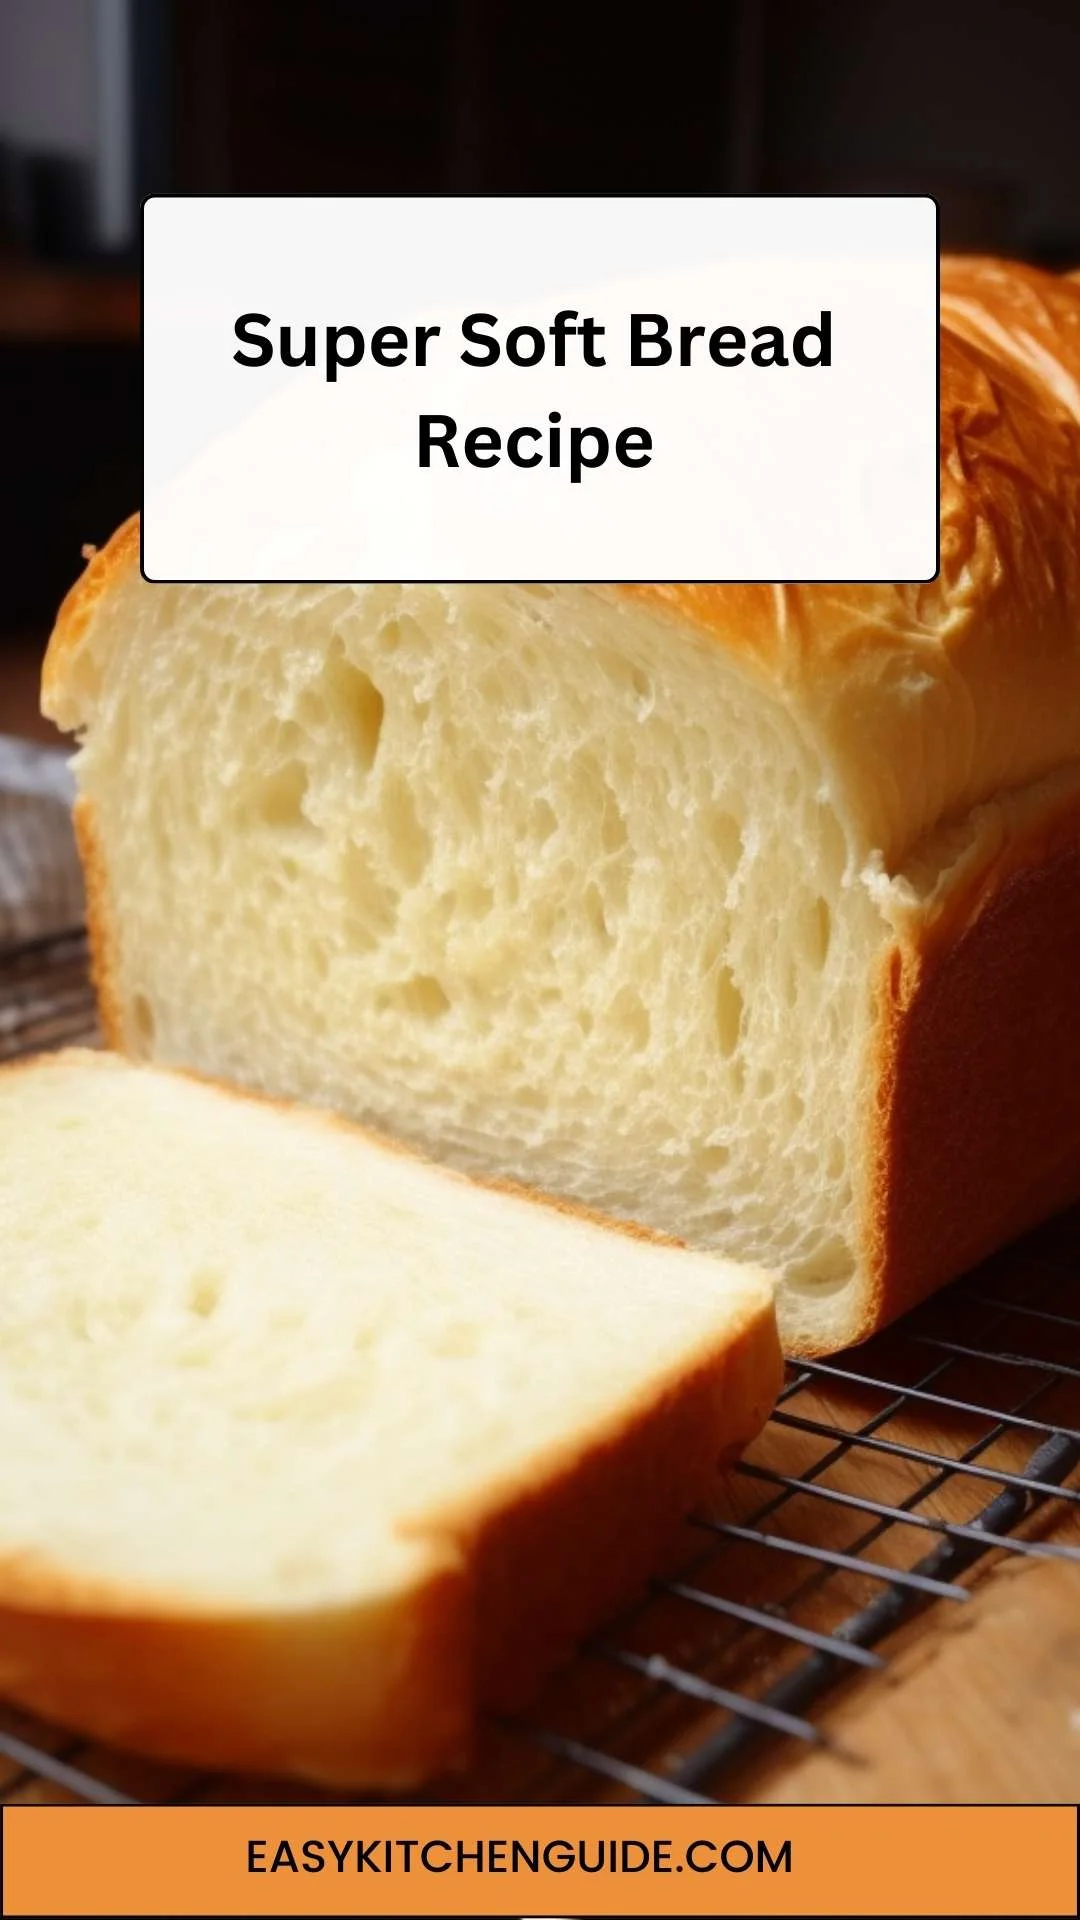 Super Soft Bread Recipe